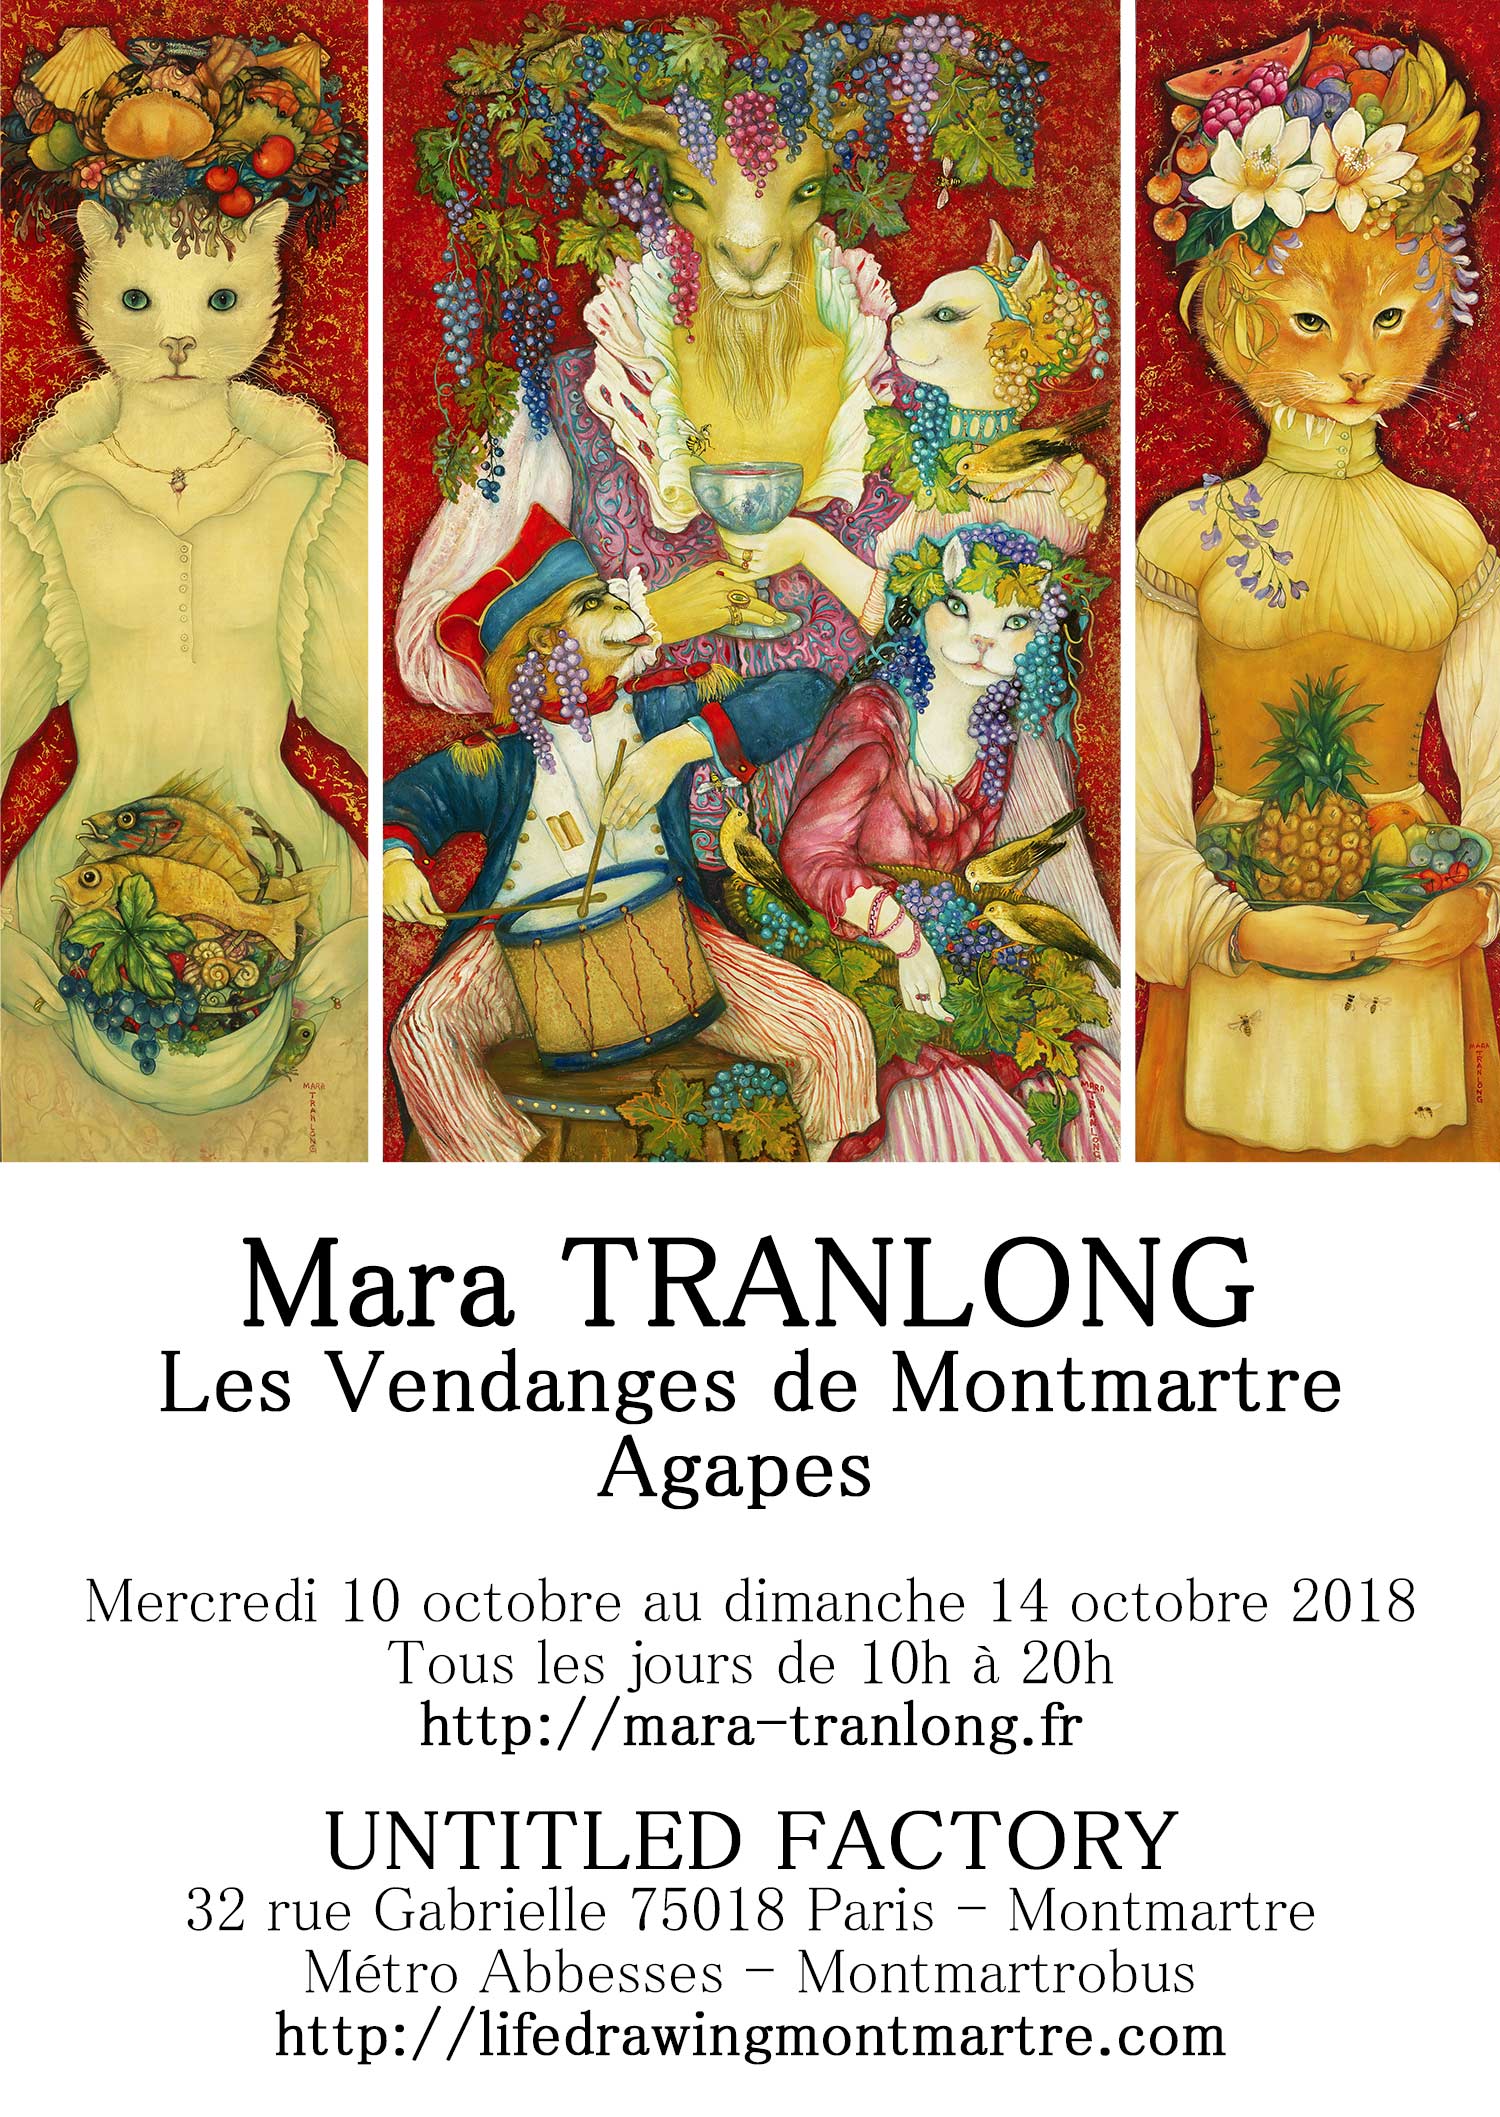 Mara Tranlong - Collection : "Les Vendanges de Montmartre - Agapes" - Titre : Roulez tambour - Tempera, acrylique sur bois - Dimensions : 95 cm x 60 cm